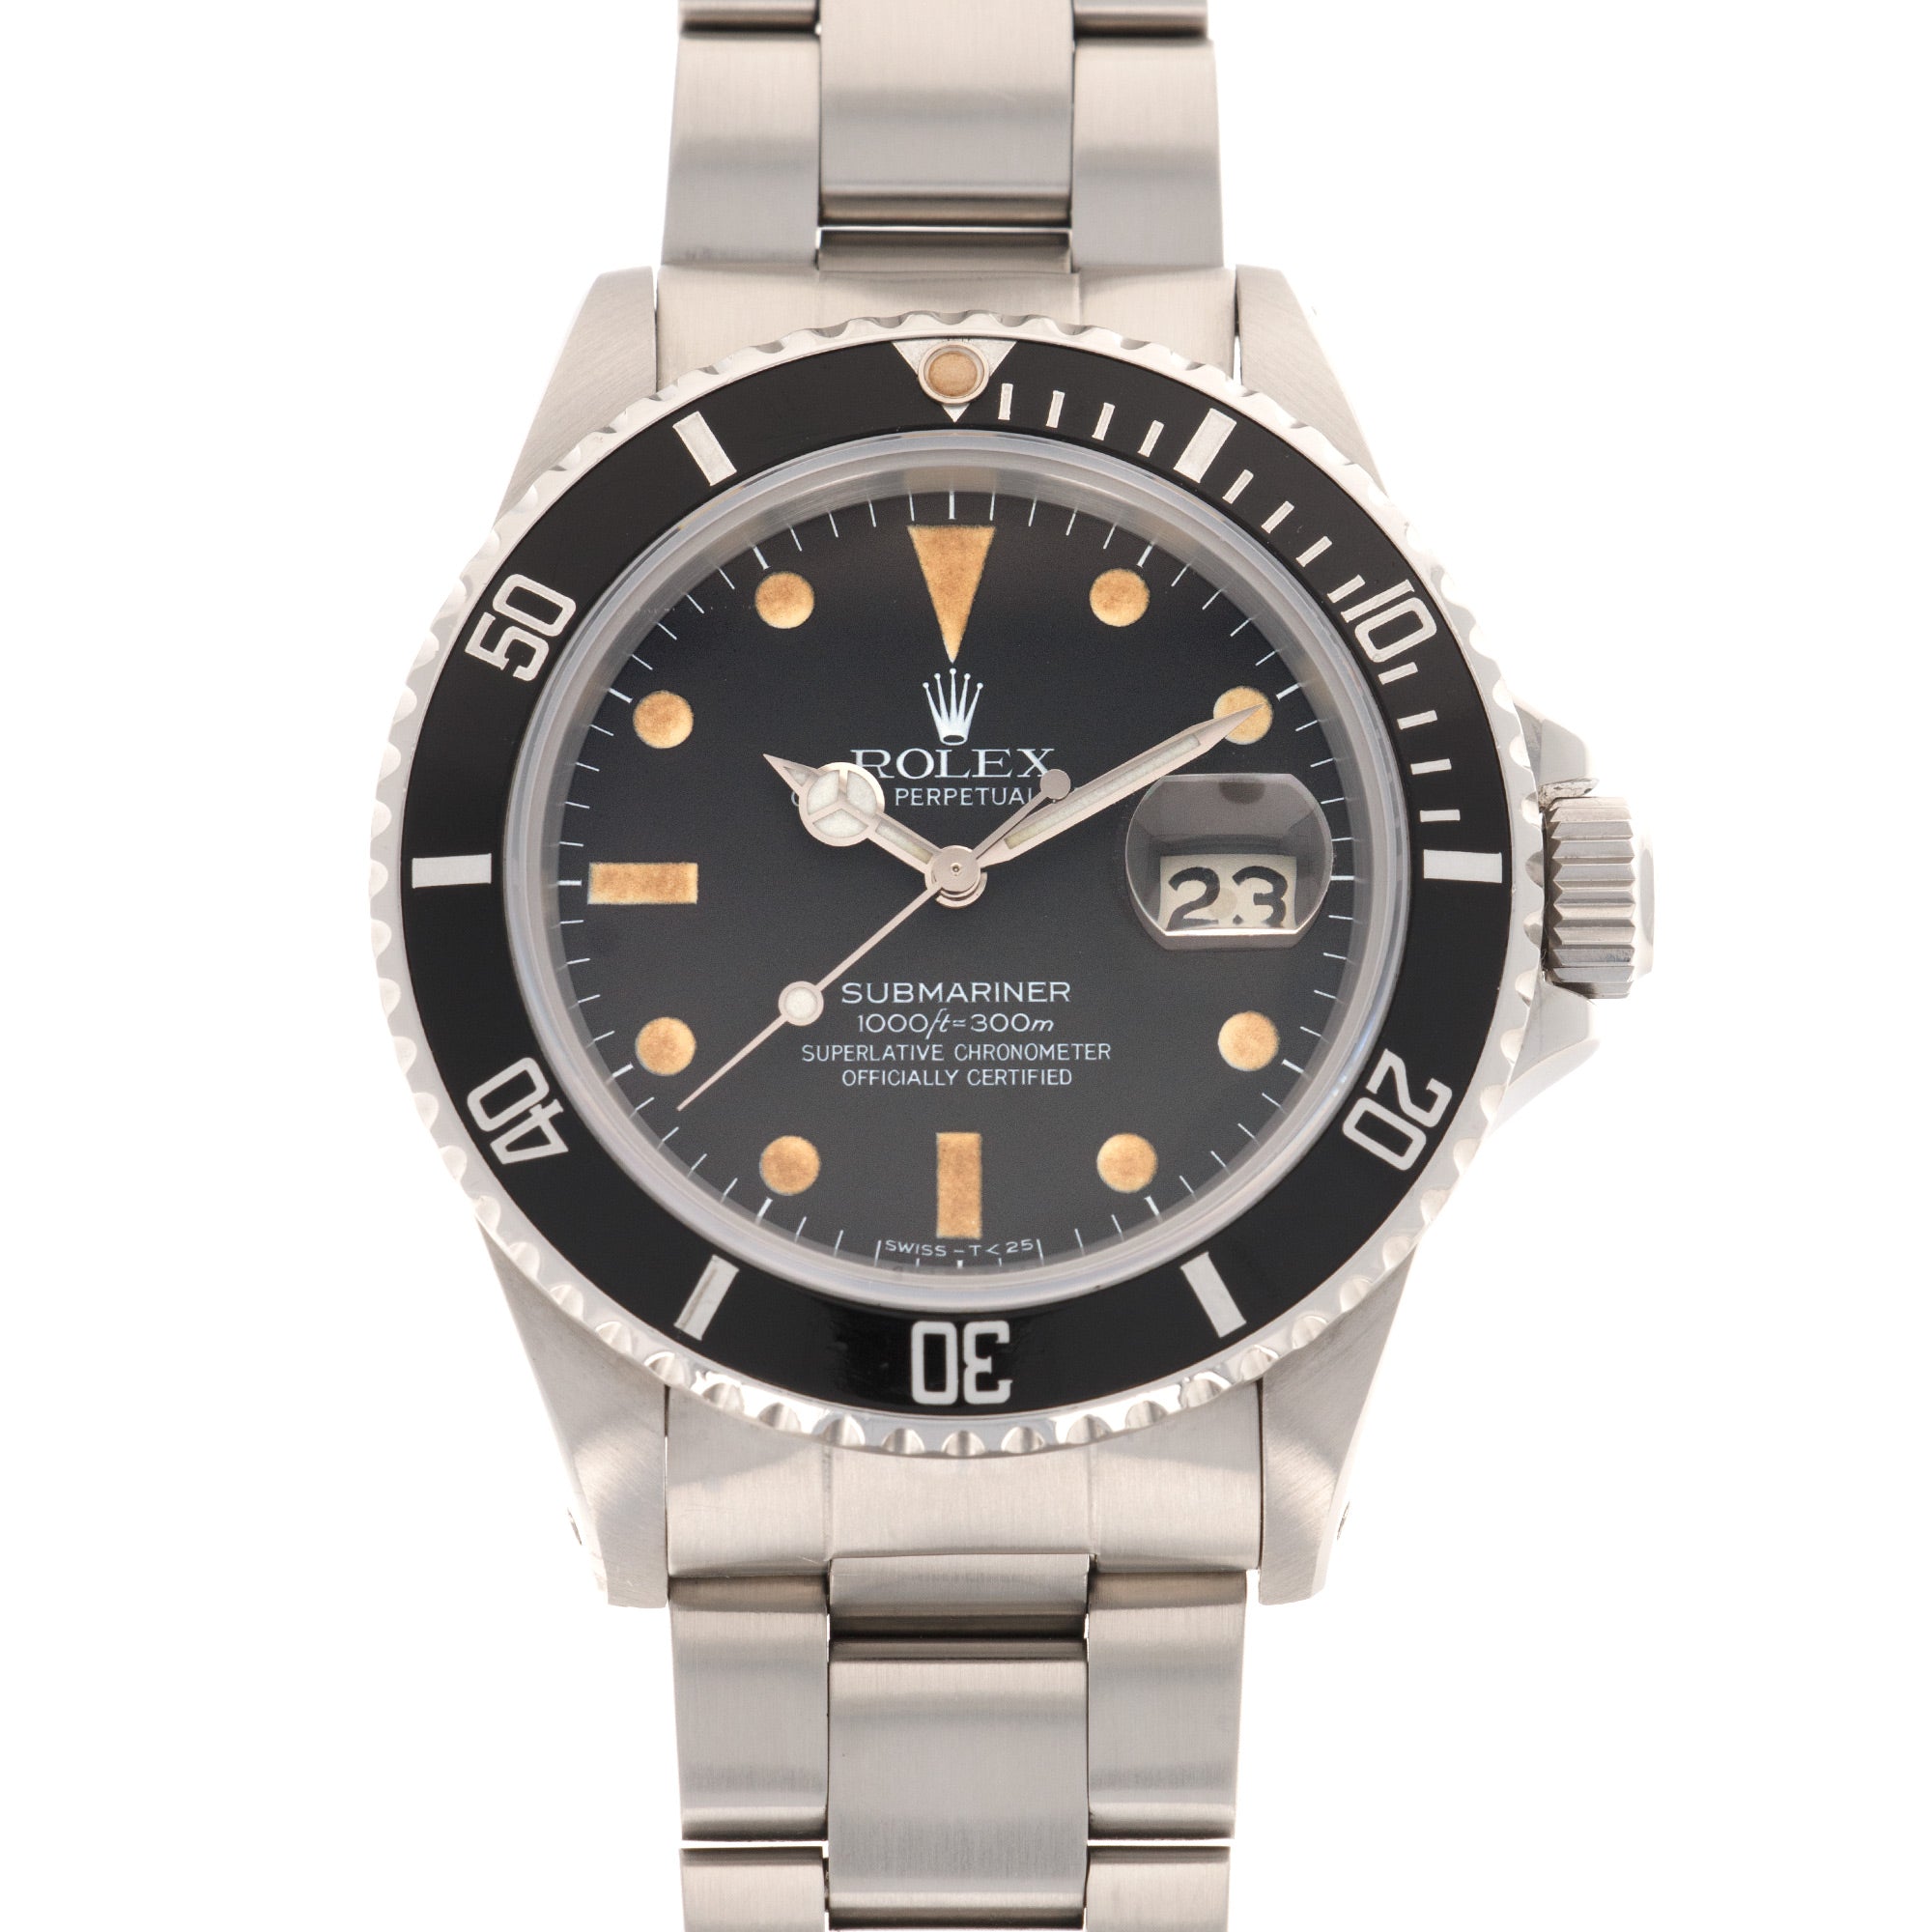 Rolex - Rolex Submariner Watch Ref. 16800, with Original Warranty Paper - The Keystone Watches